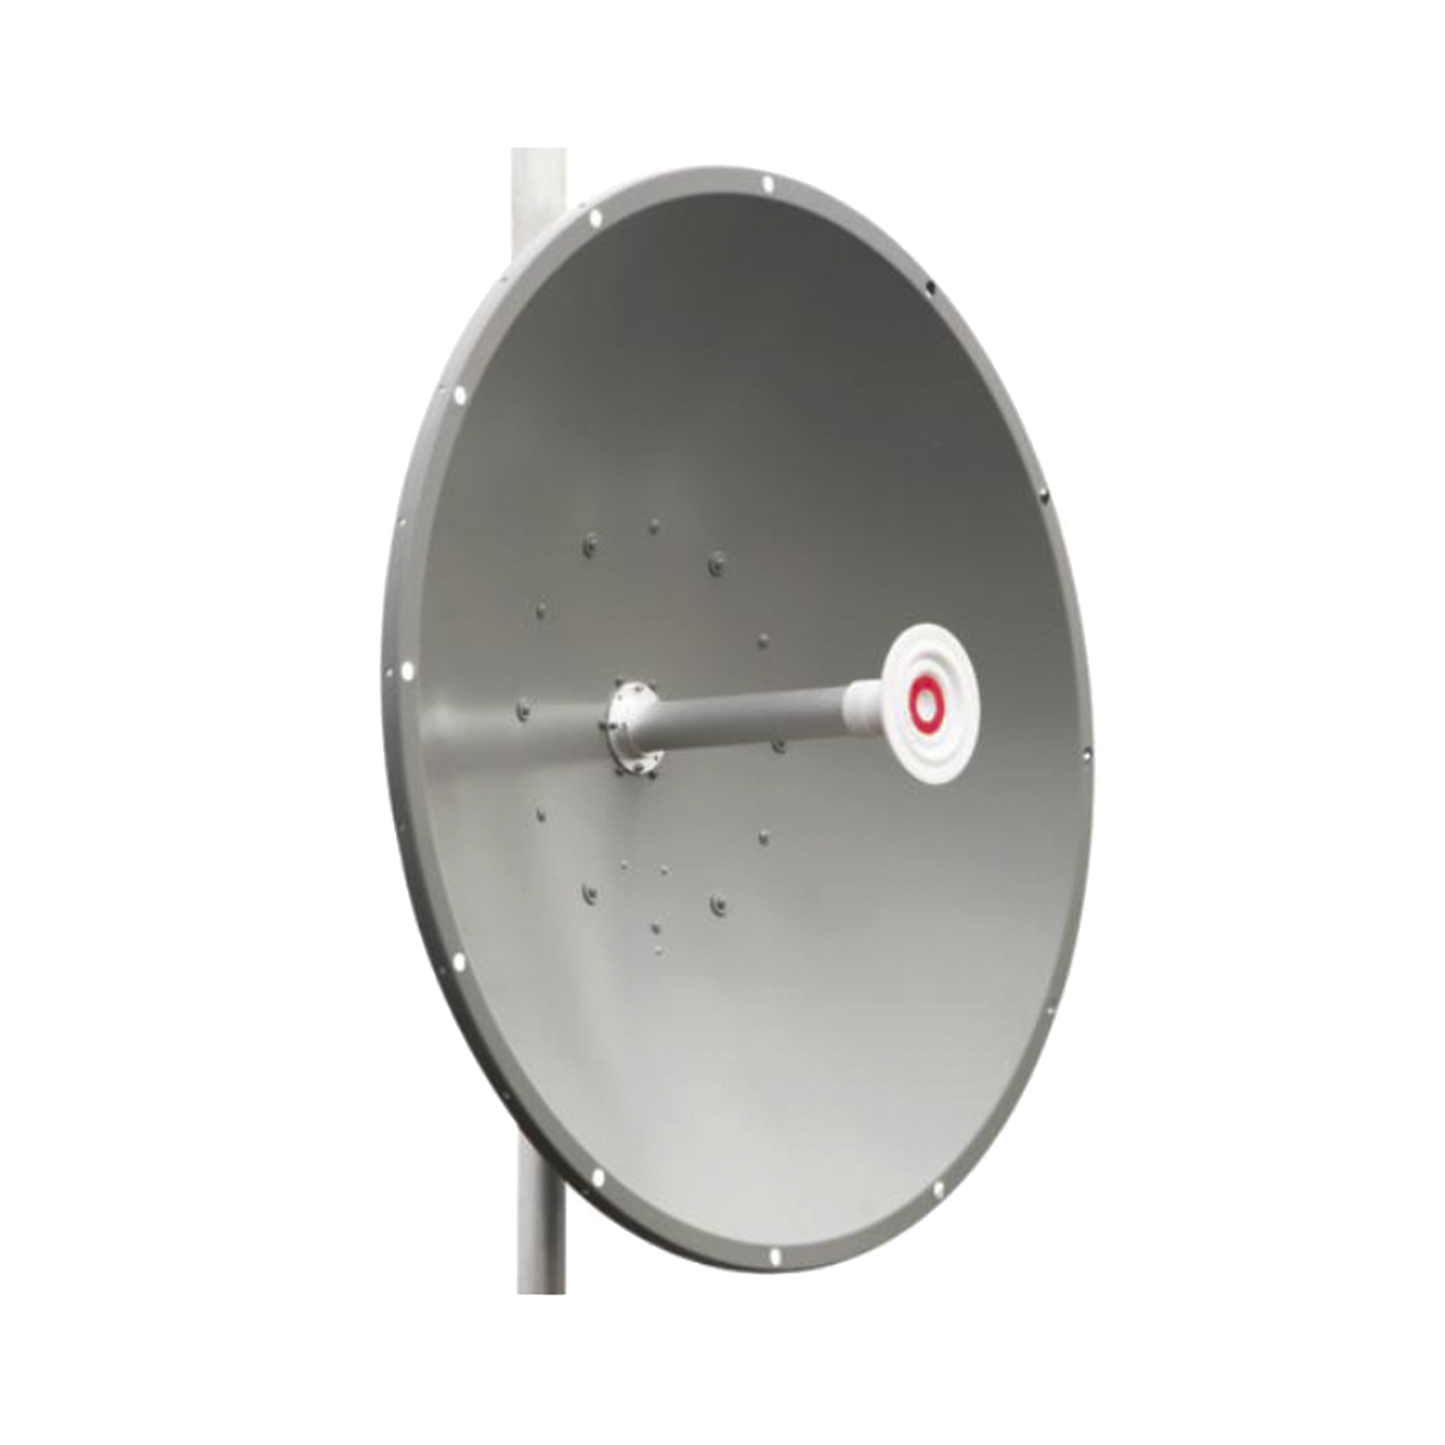 Antena direccional de 3 ft, 5.1 a 7.1 GHz, Ganancia 34 dBi, Conectores N-hembra, Polarización doble, incluye montaje para torre o mástil